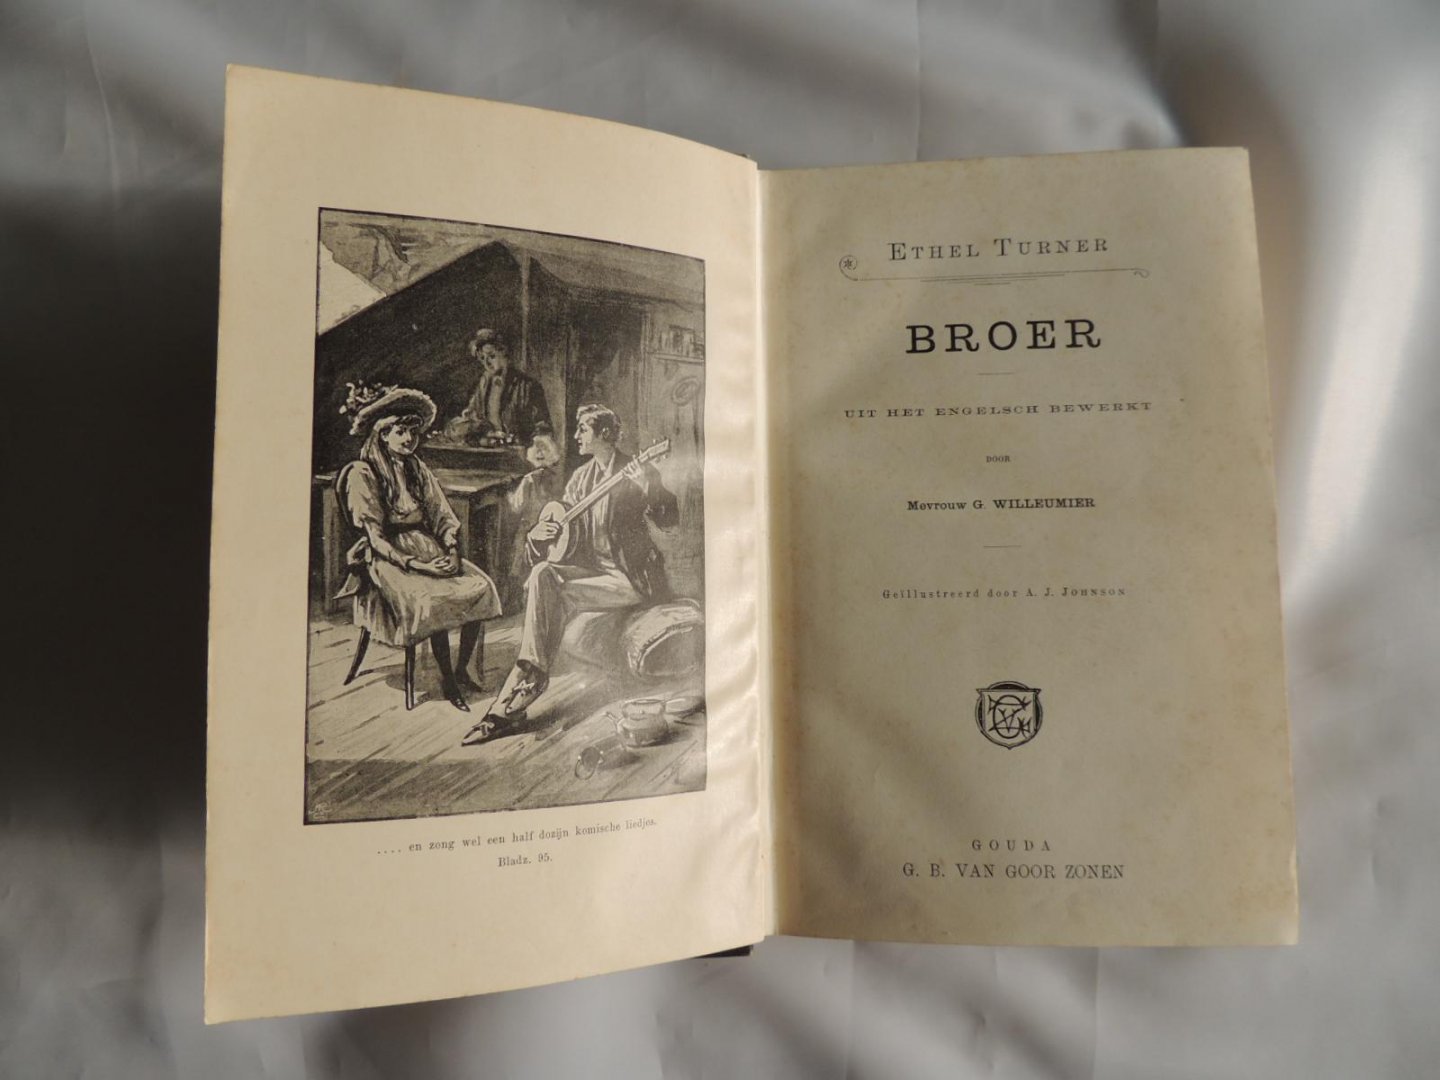 Turner, Ethel S // MARIE TEN BRINK illustr. A.J.JOHNSON /// Bewerkt door G. Willeumier. (broer) - BROER